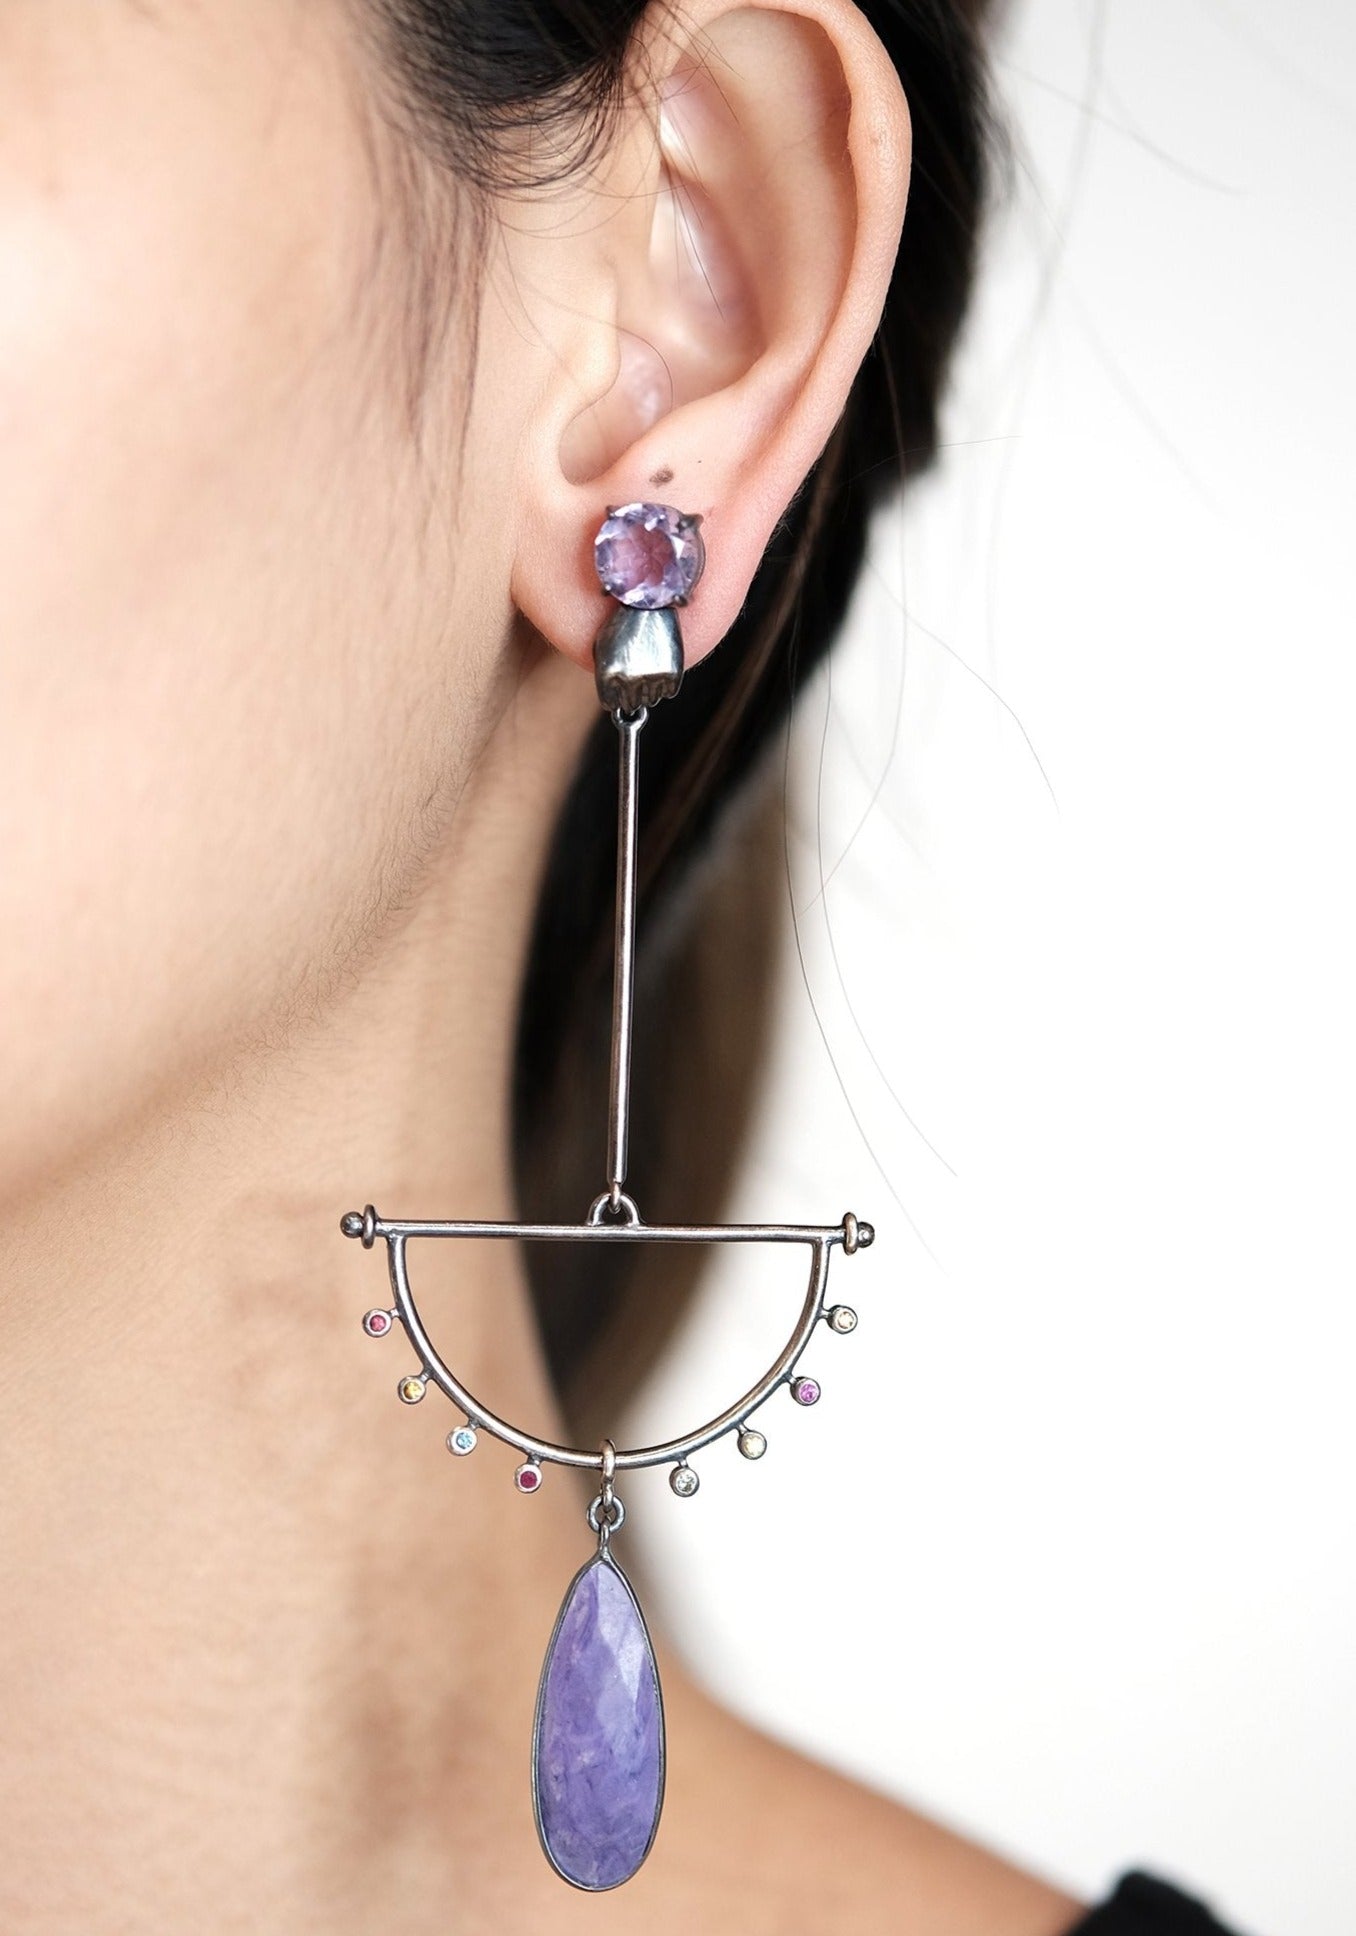 The Madstone Mudras earrings